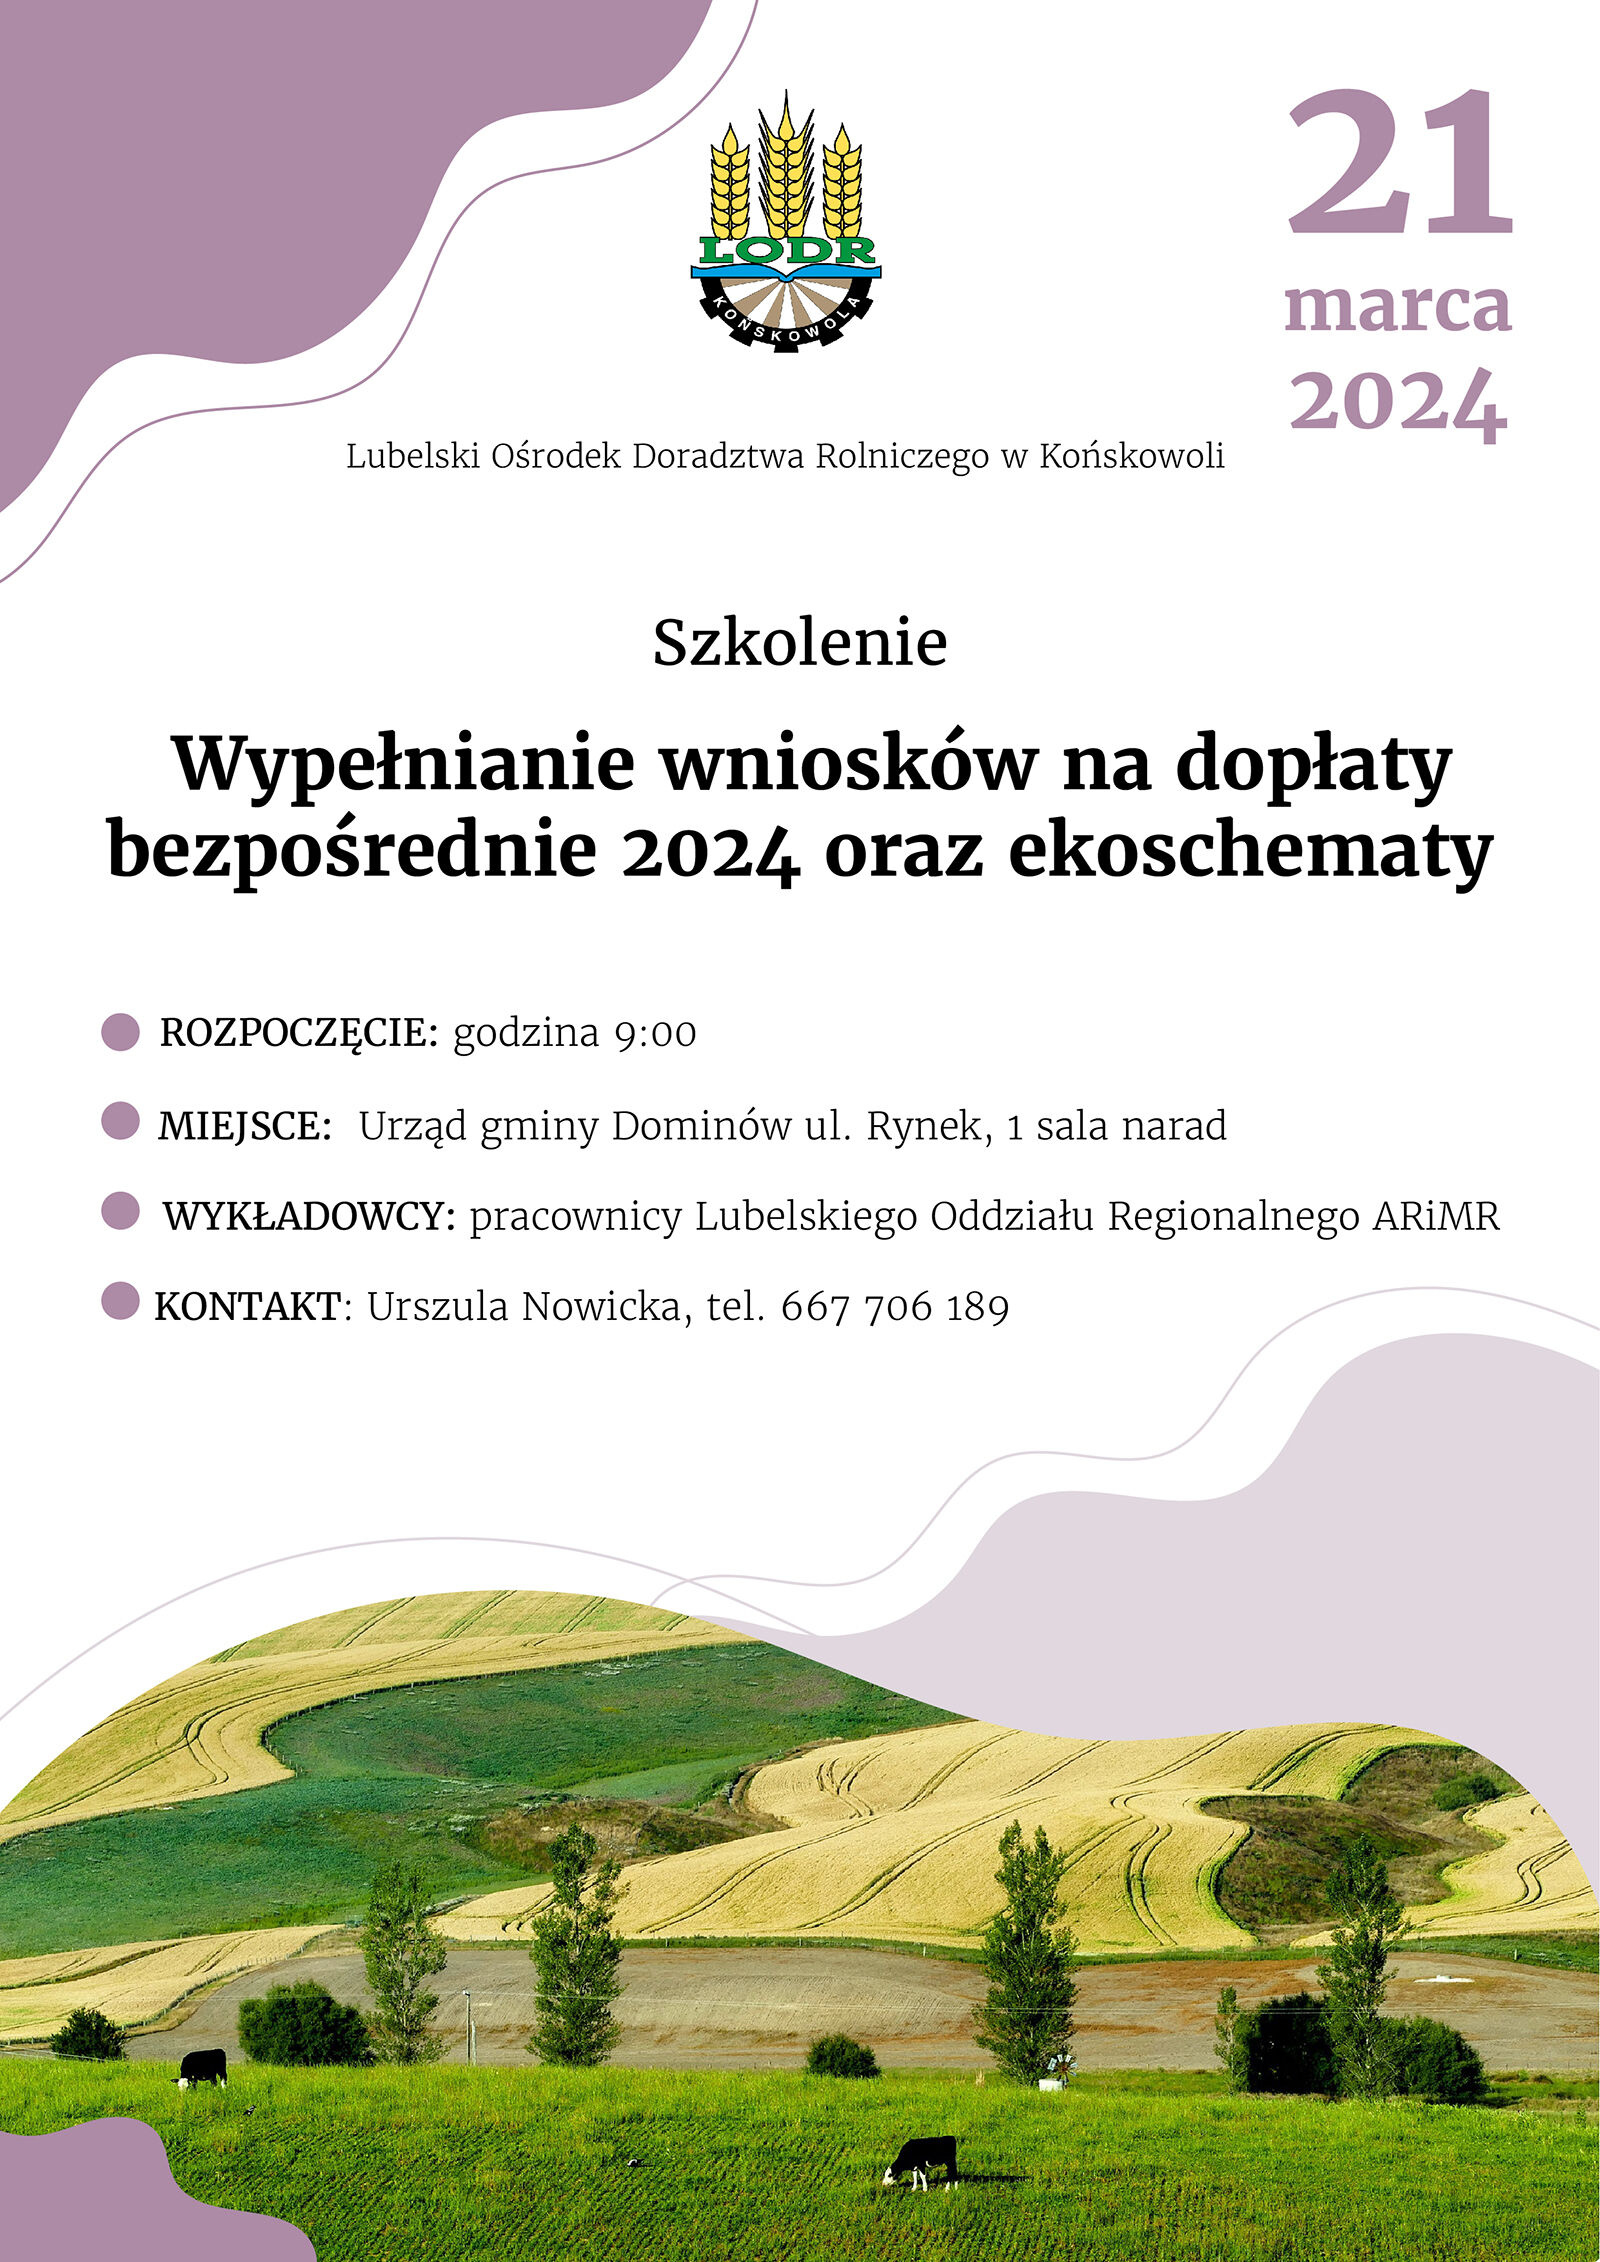 Plakat informacyjny o spotkaniu, z grafiką zielonych, falujących wzgórz, na których pasie się kilka owiec. Na górze herb i data "21 marca 2024".